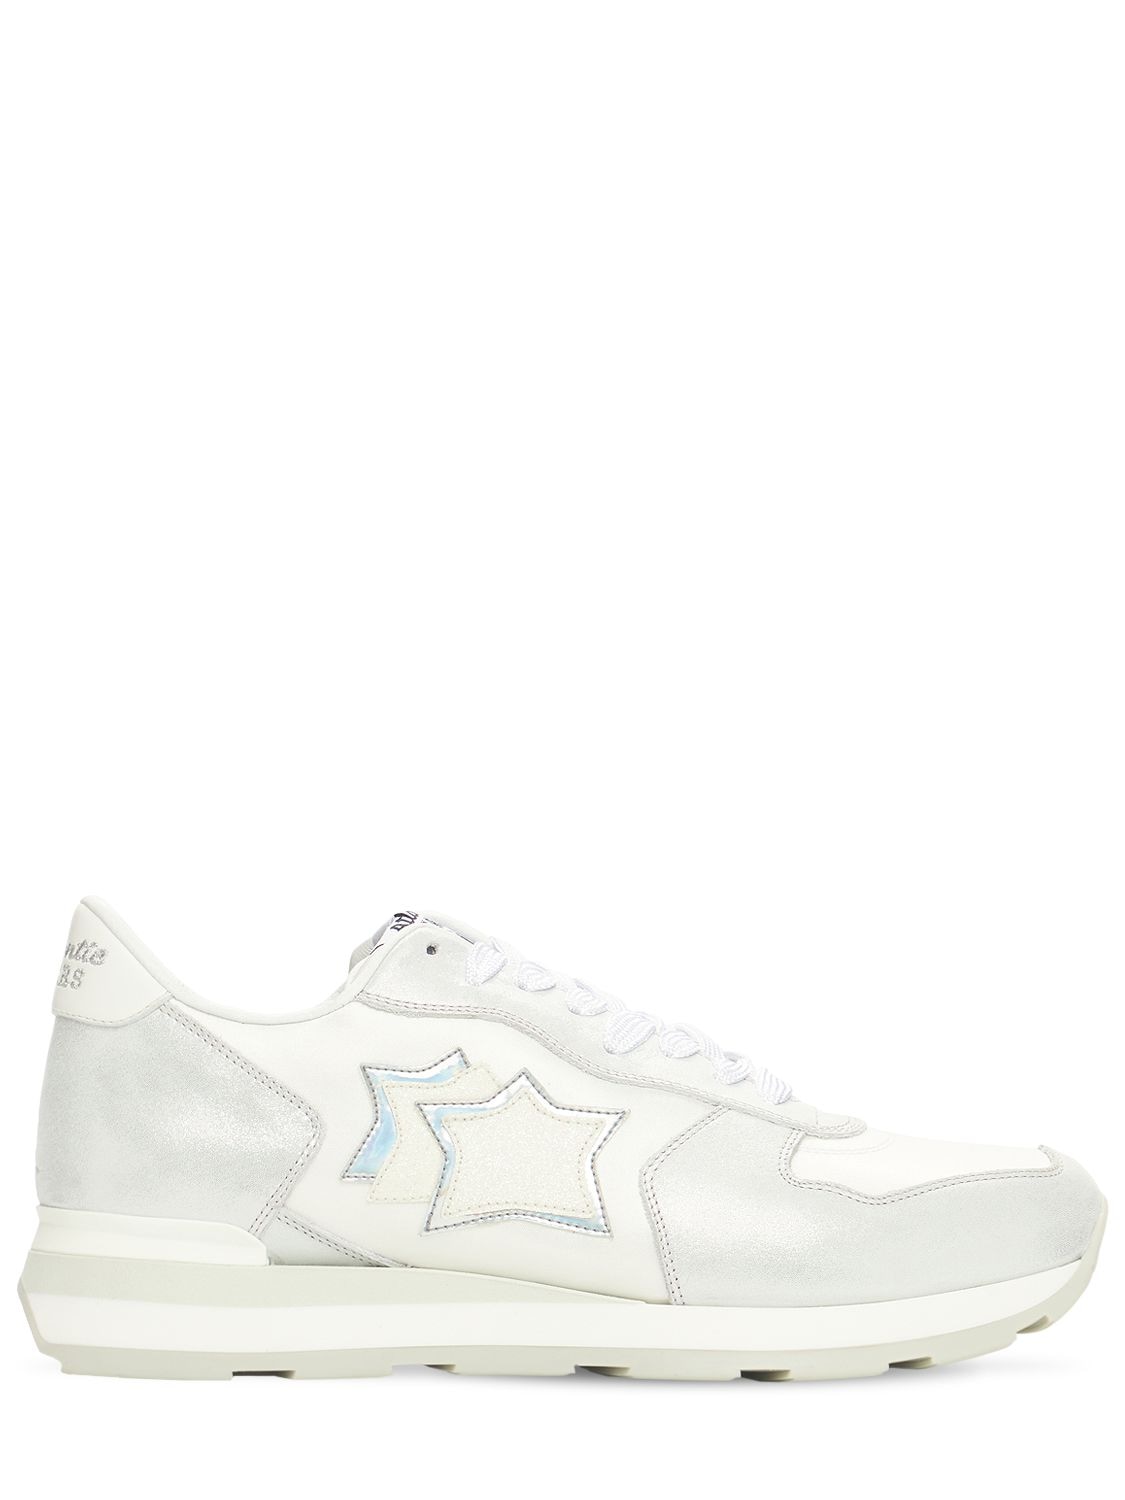 Atlantic Stars Vega Suede & Nylon Sneakers In White